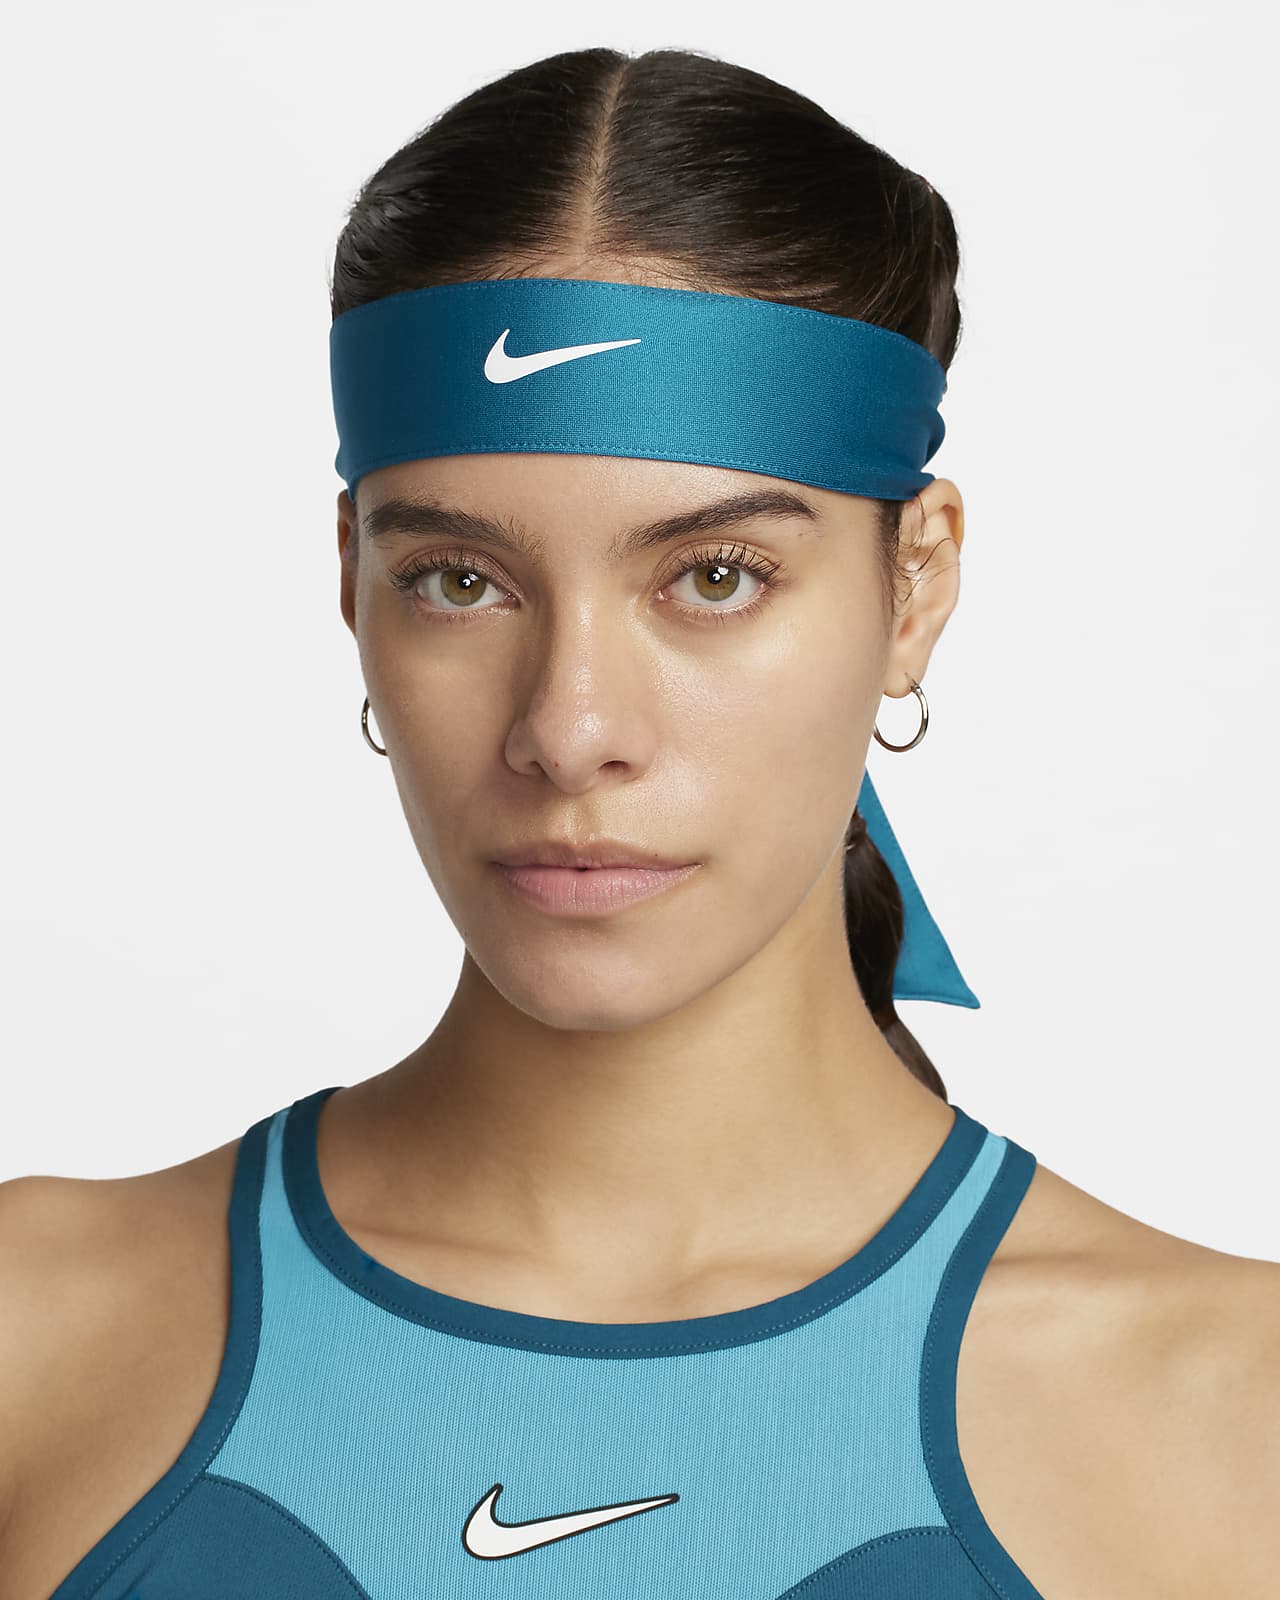 NikeCourt Tennishoofdband voor dames